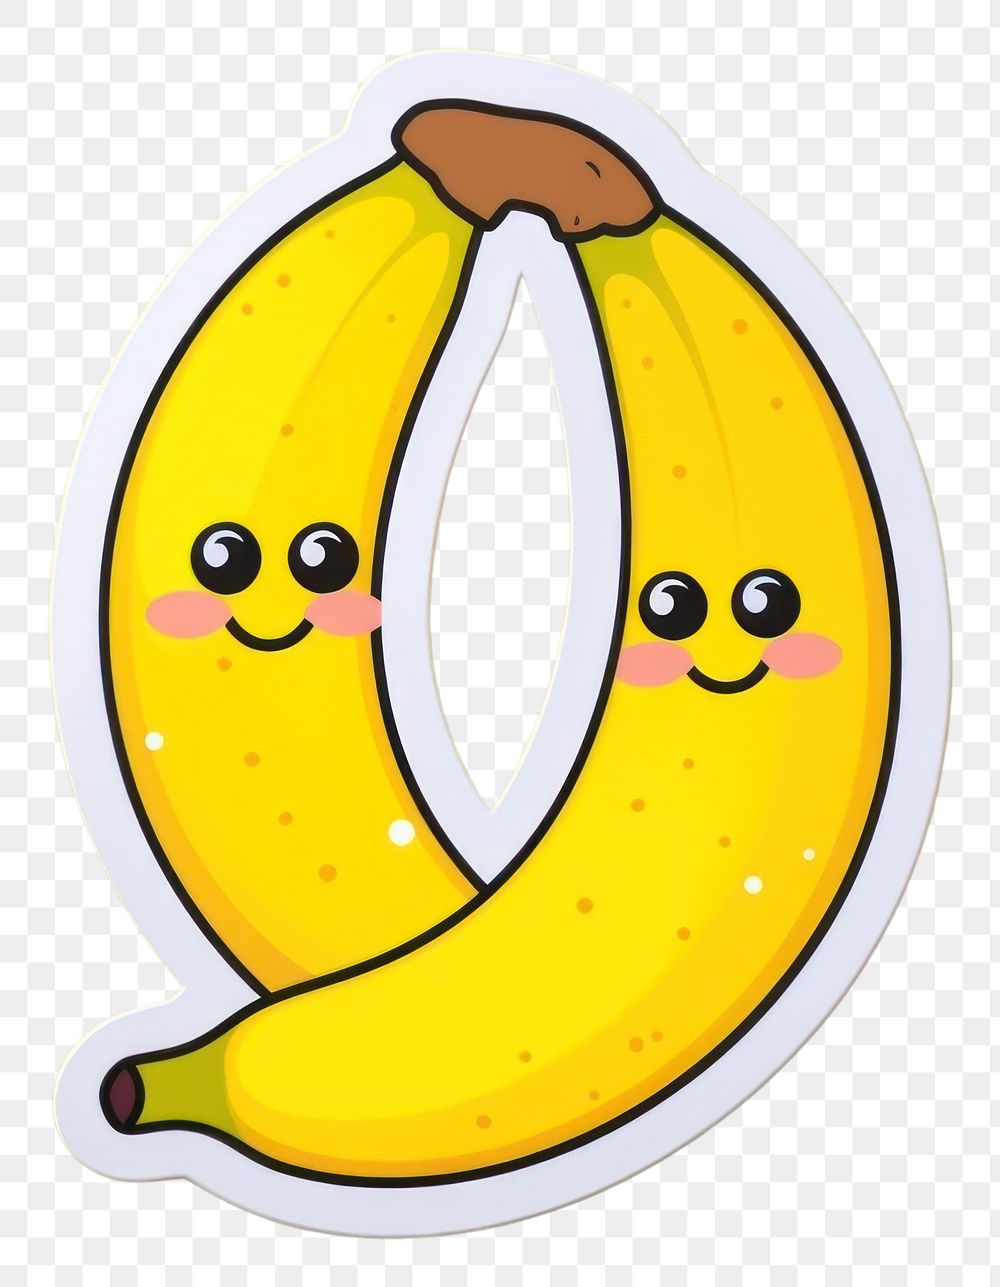 PNG Banana banana food representation. AI generated Image by rawpixel.